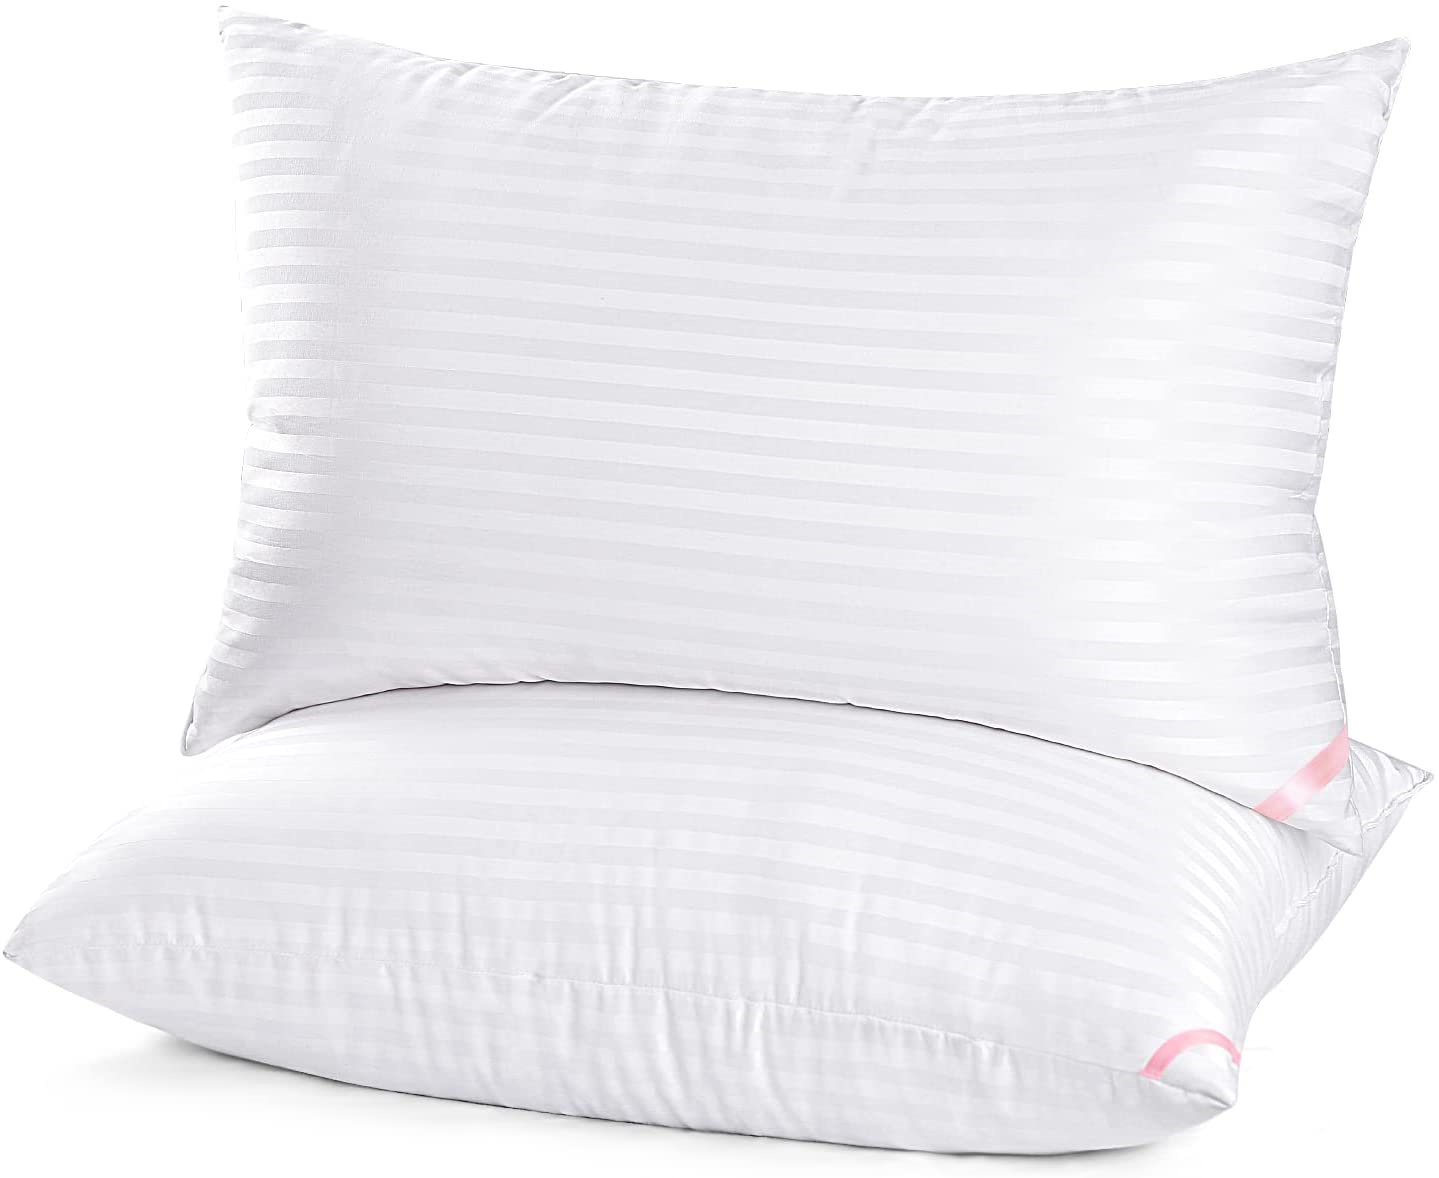 NEW 2 Pack Queen Size Sleep Pillow Hypoallergenic Pillows Cotton Soft Gel Fiber 